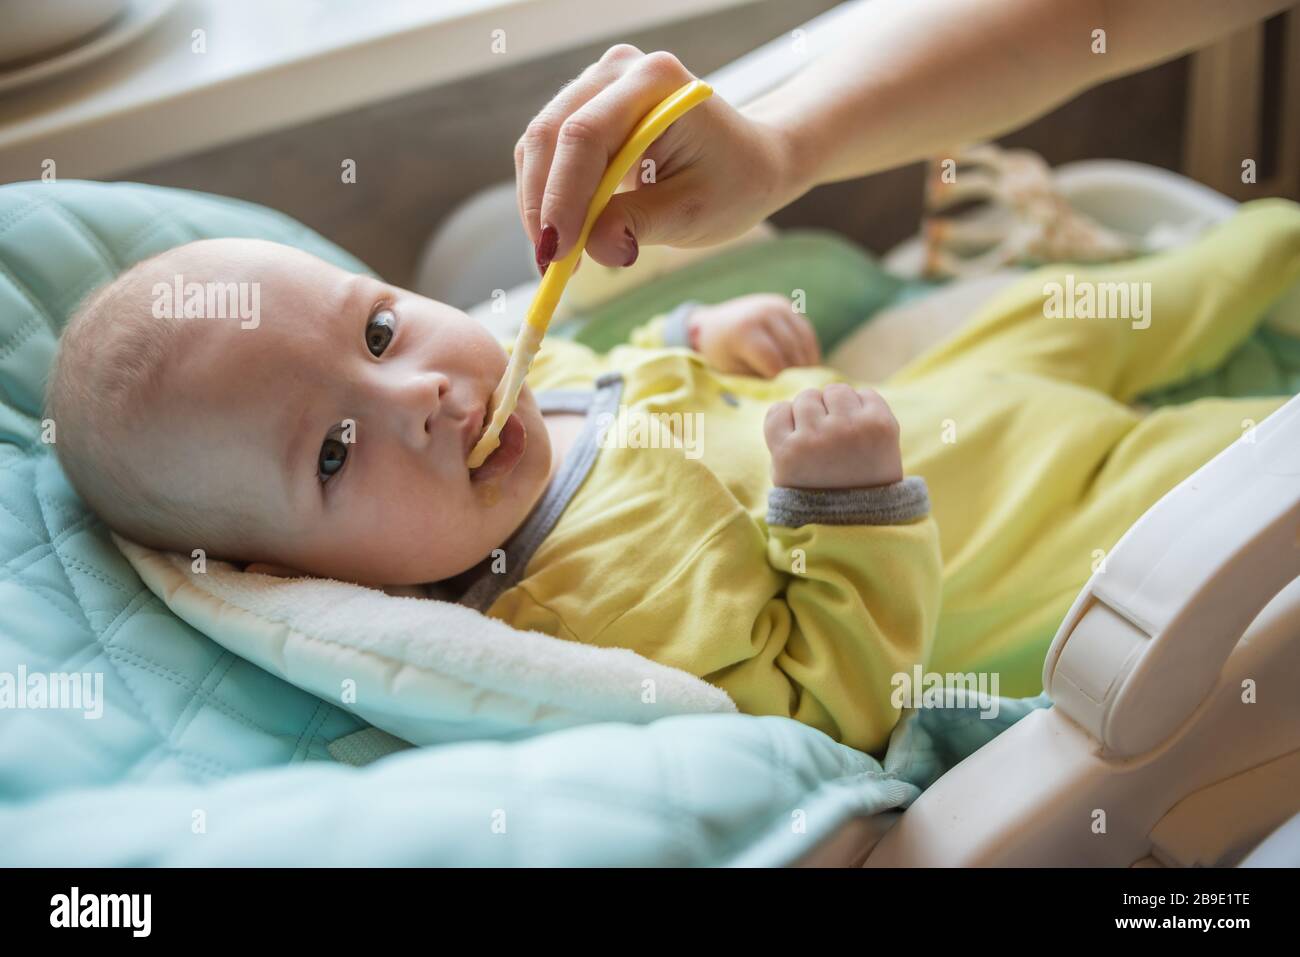 La mamma alimenta la purea di verdure del bambino in un seggiolone. La madre mette un cucchiaio di schiacciamento nella bocca del bambino. Il bambino mangia cibo. Foto Stock